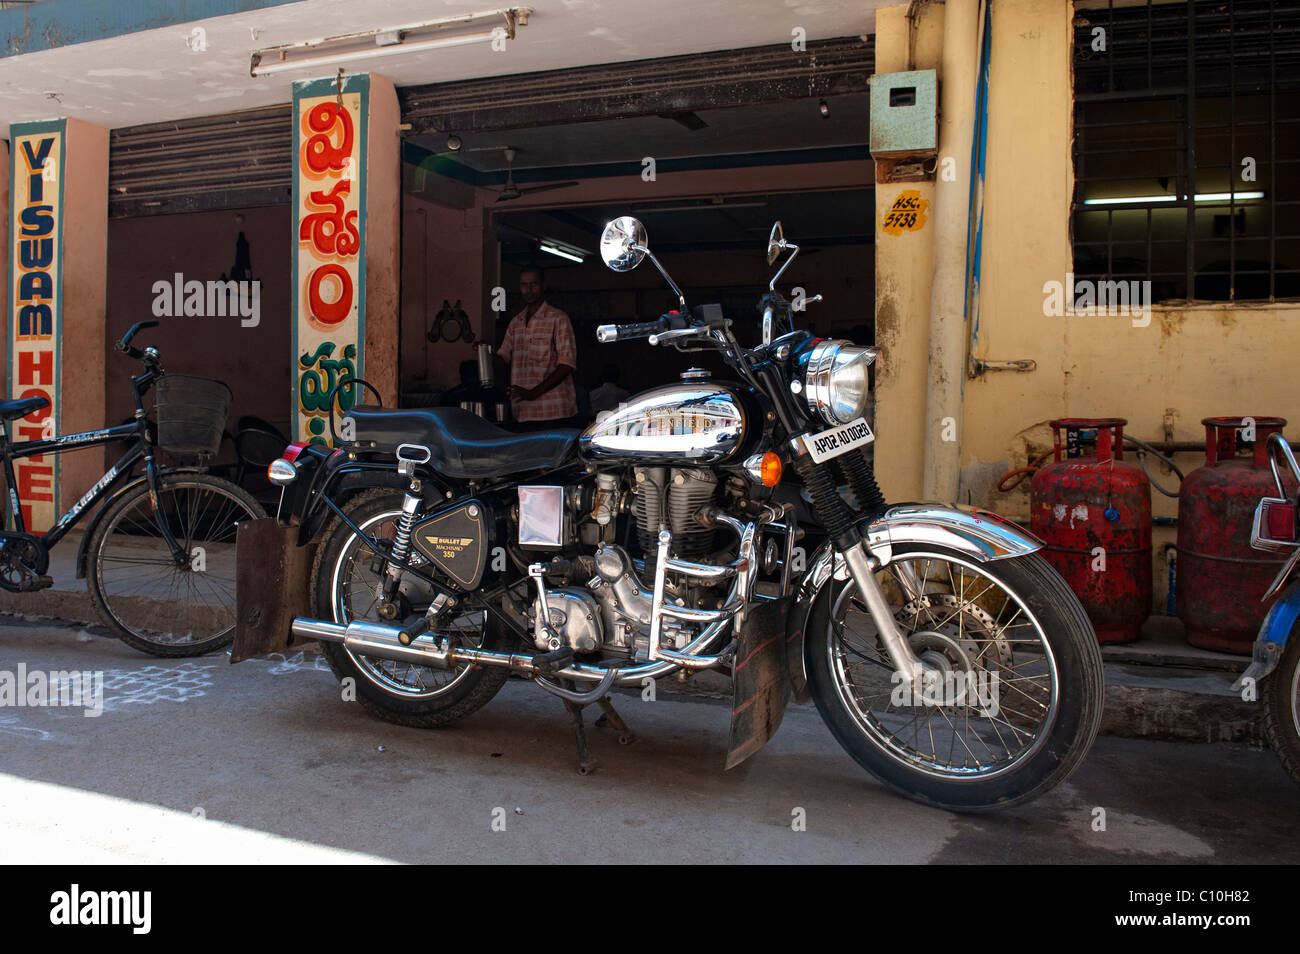 Royal Enfield bullet 350 Chrome moto. L'extérieur d'un magasin indien tiffin. Puttaparthi, Andhra Pradesh, Inde Banque D'Images